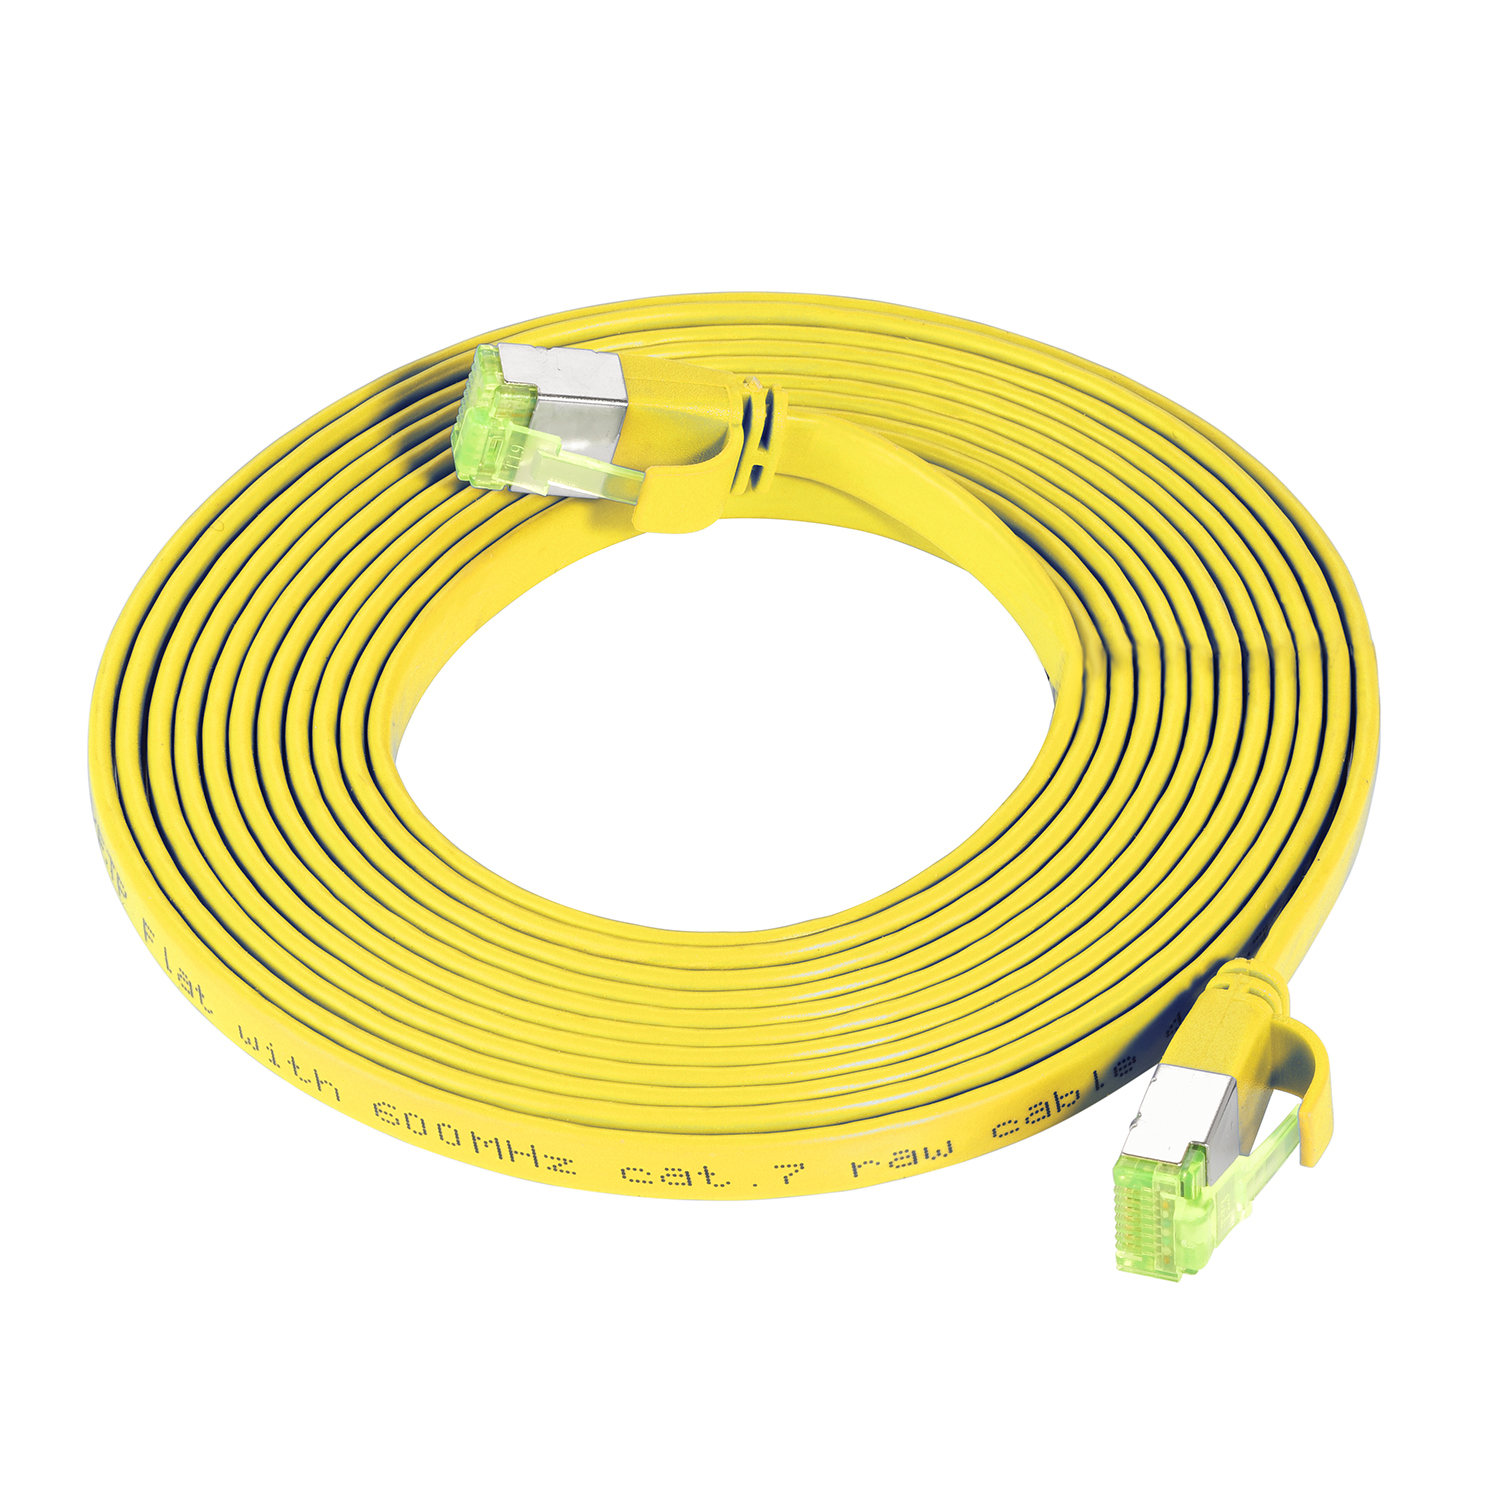 TPFNET 2m Patchkabel / Flachkabel GBit, m U/FTP 10 Netzwerkkabel, gelb, 2